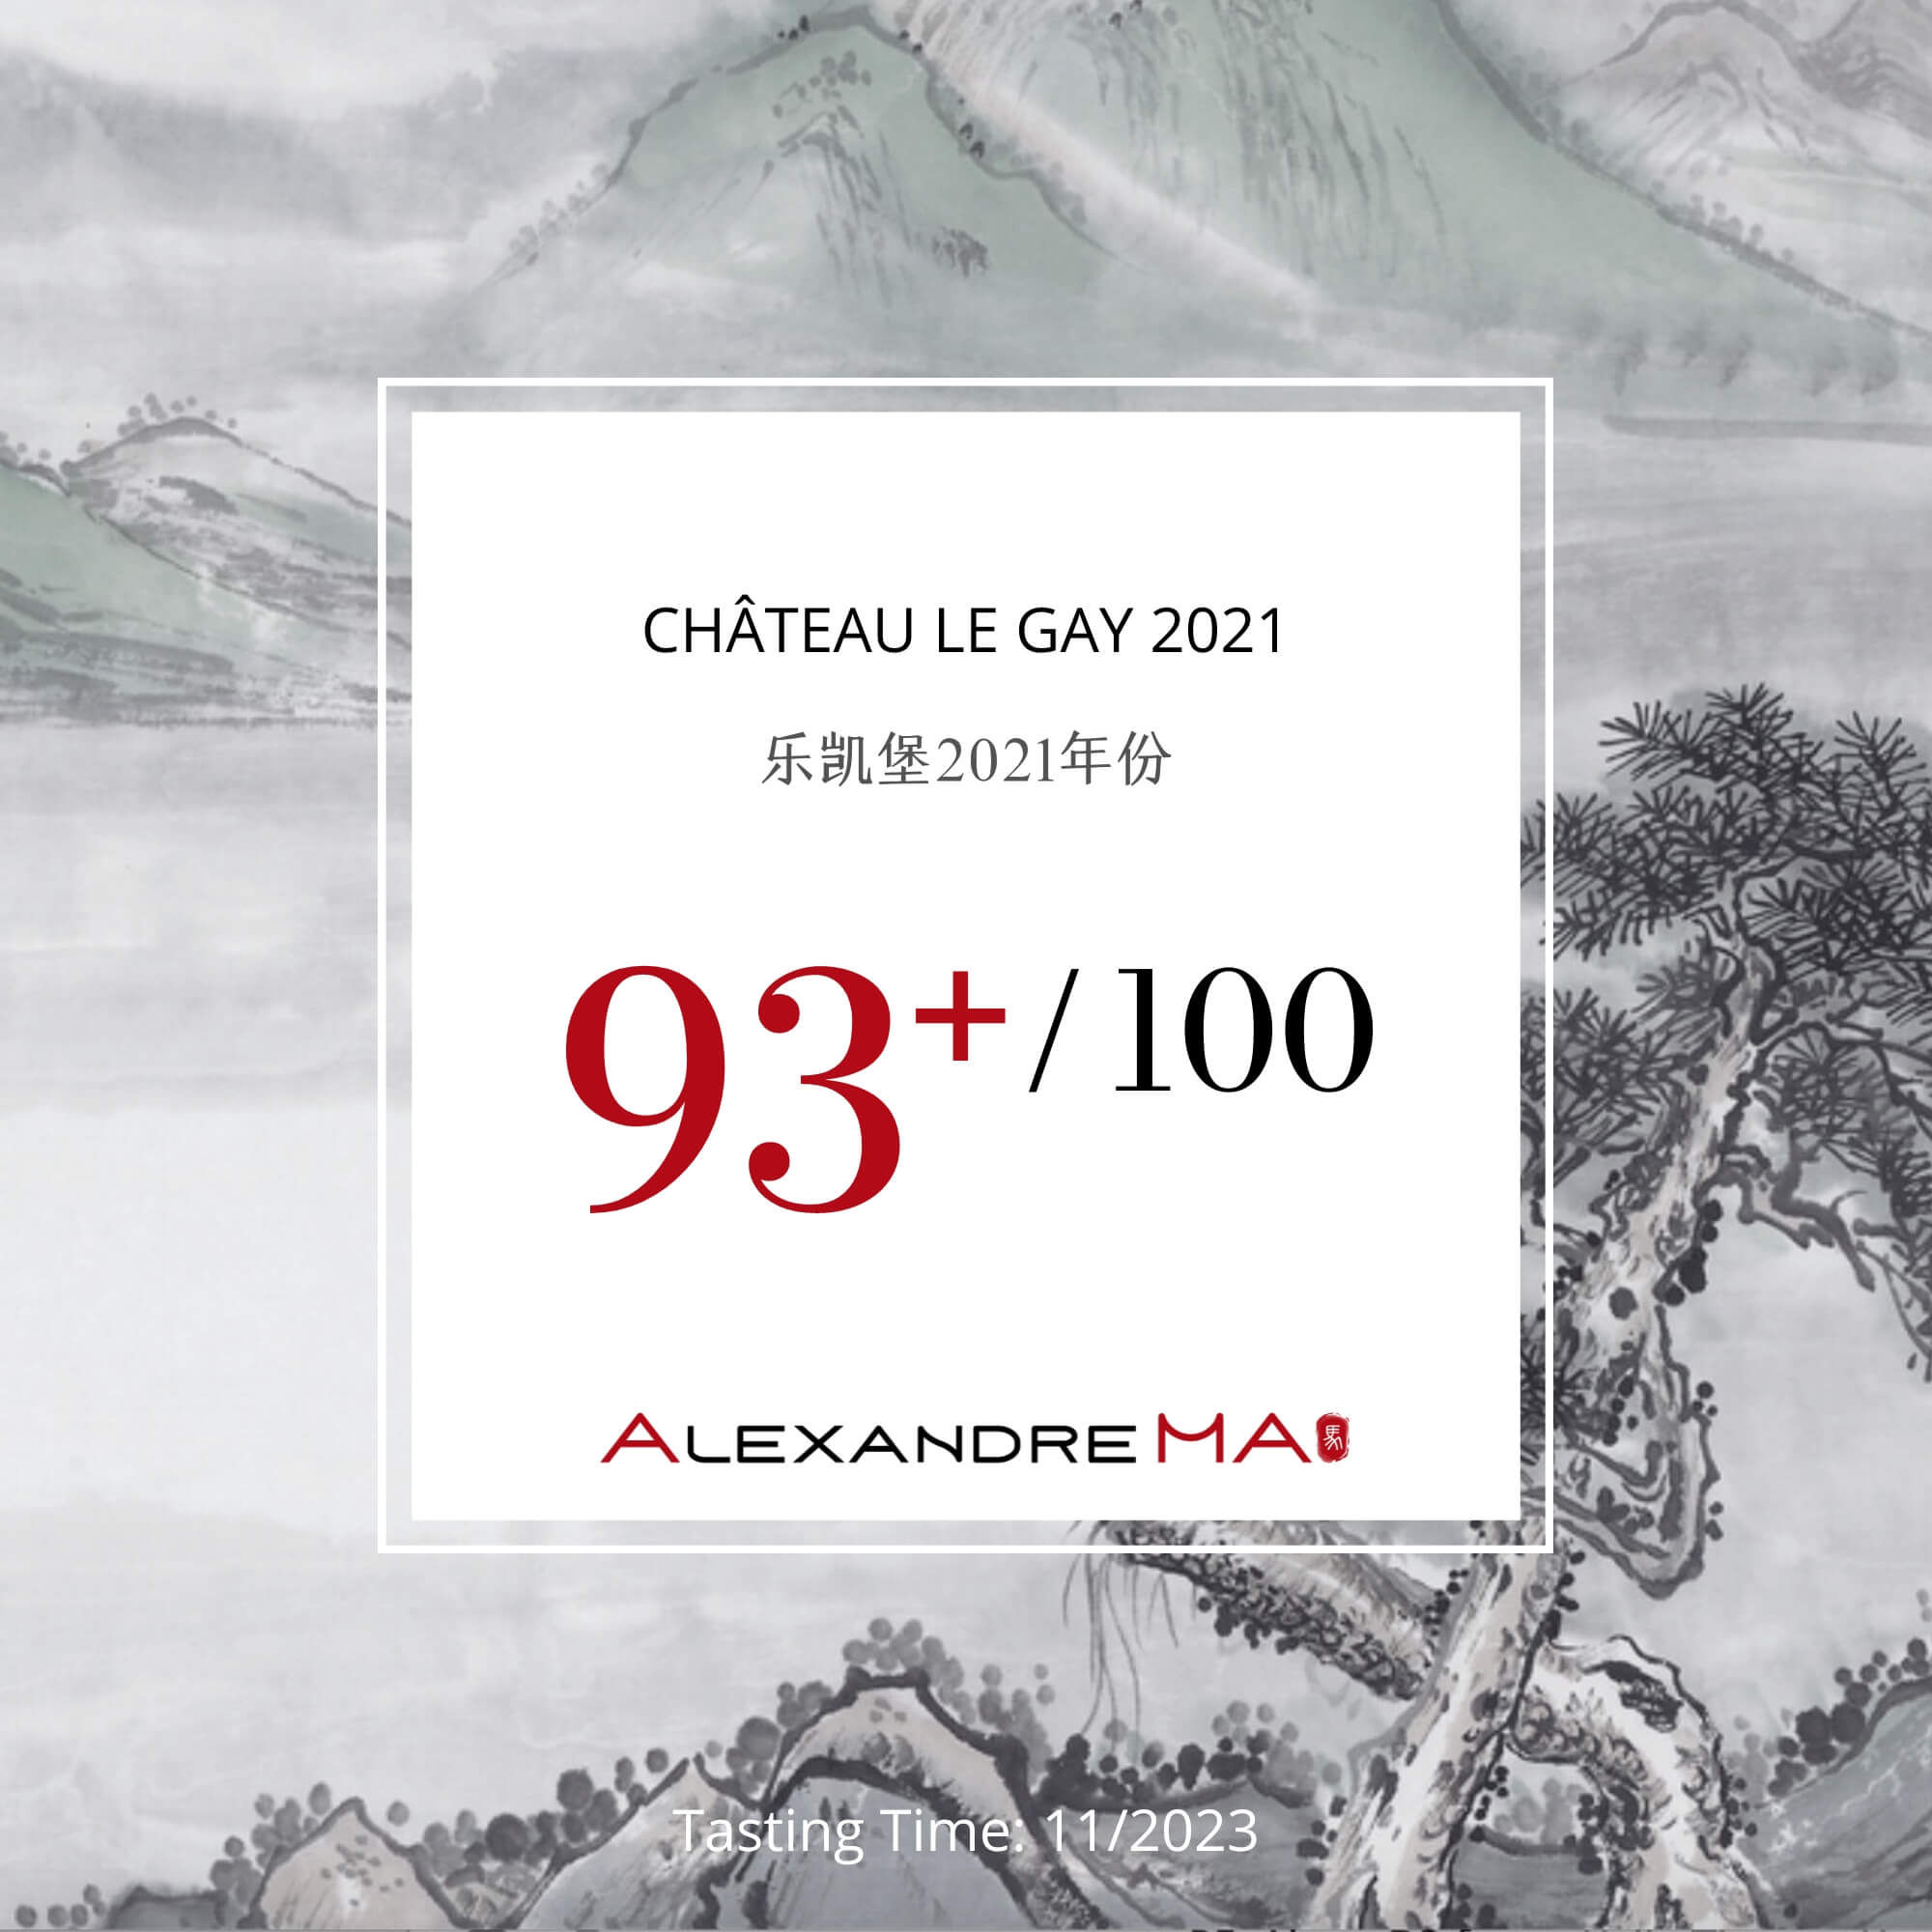 Château Le Gay 2021 - Alexandre MA